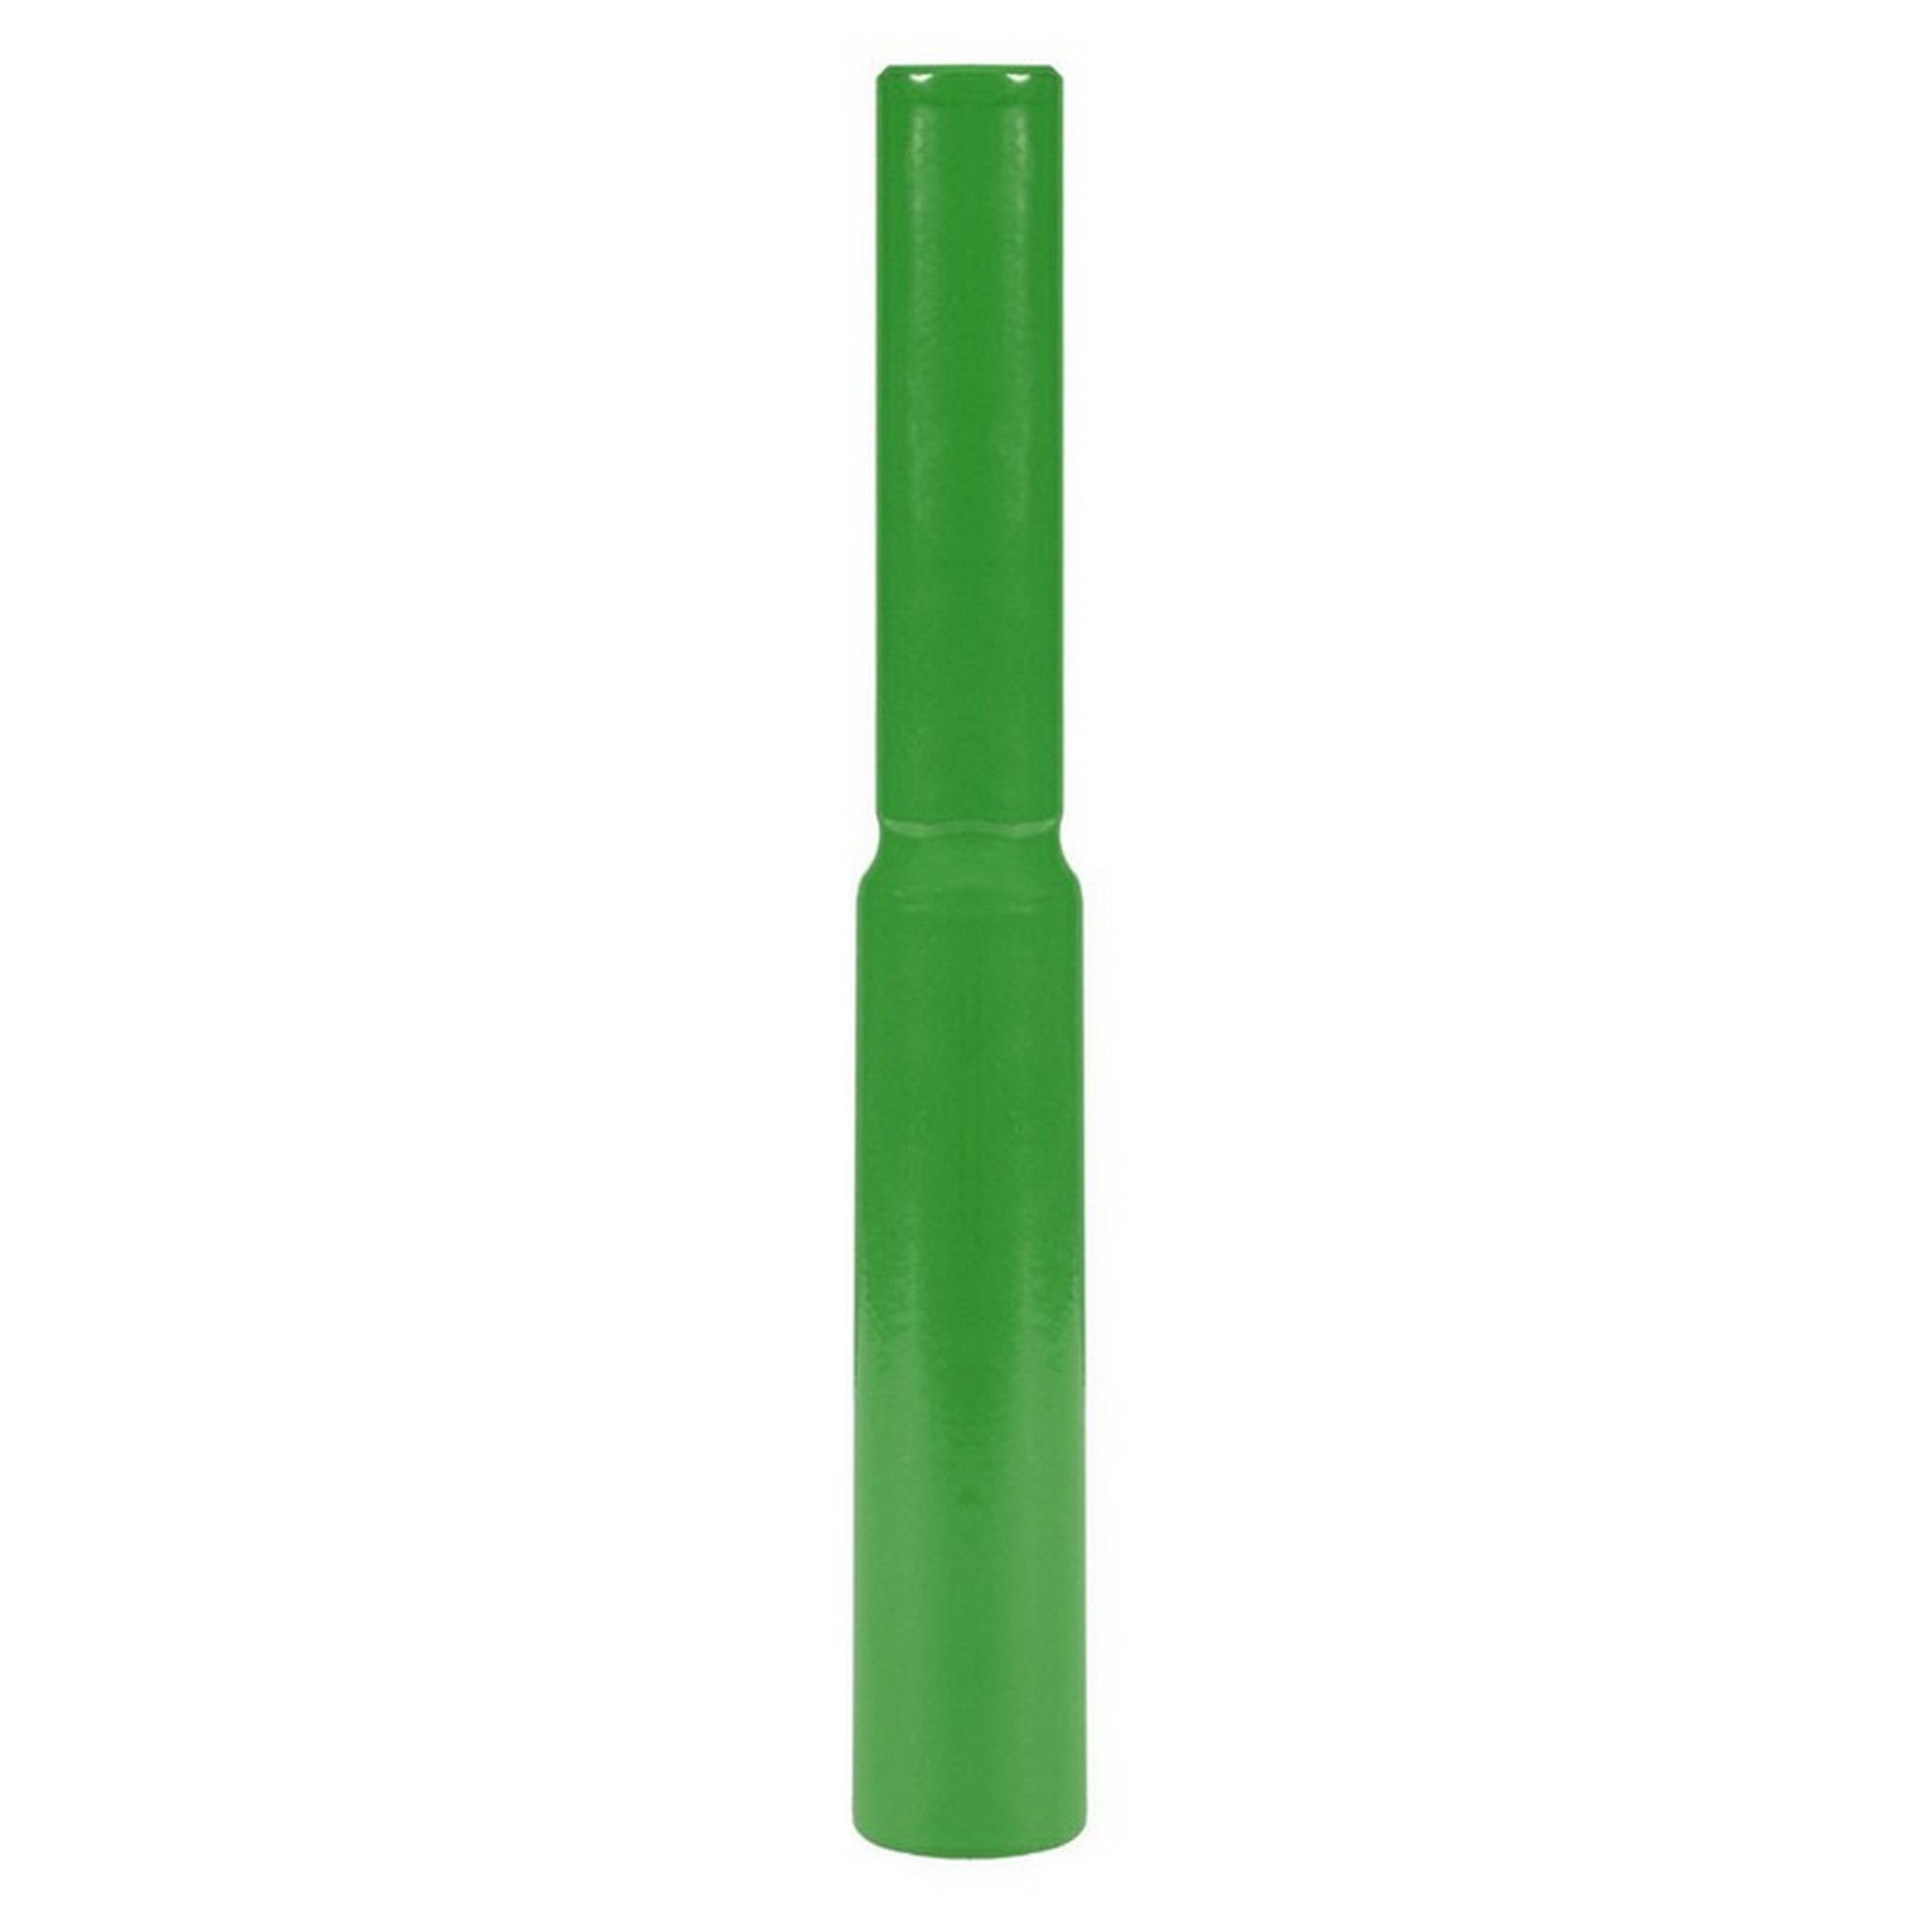 Граната металлическая для метания 500 г, 25 см, металл S0000072190 зеленый